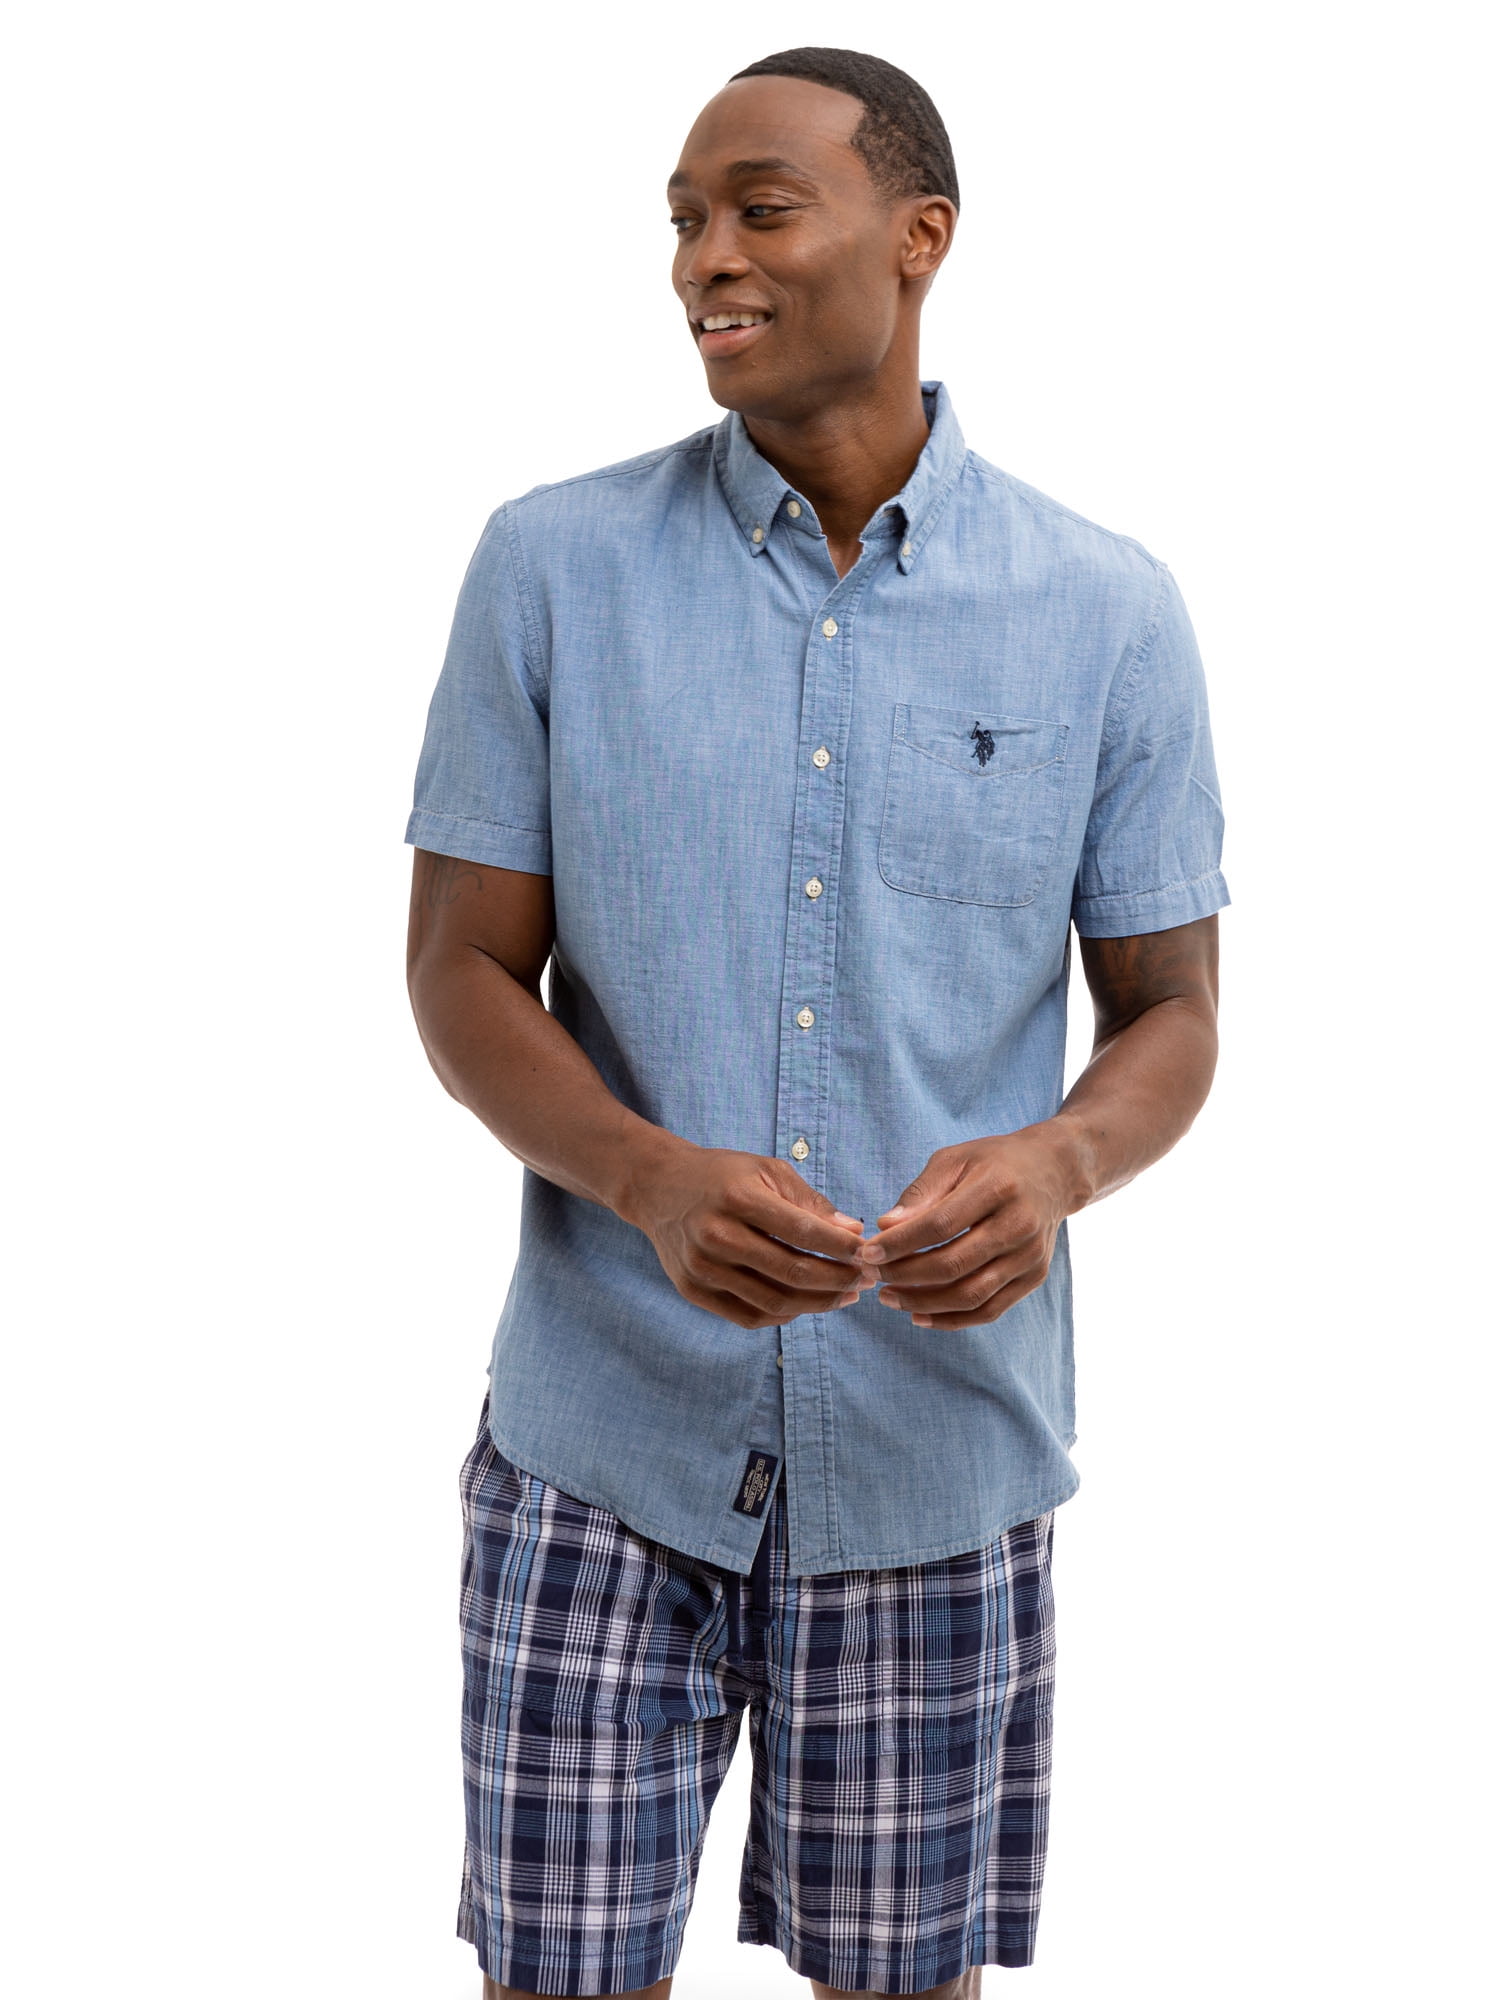 U.S. Polo Assn. Men's Short Sleeve Woven Shirt - Walmart.com